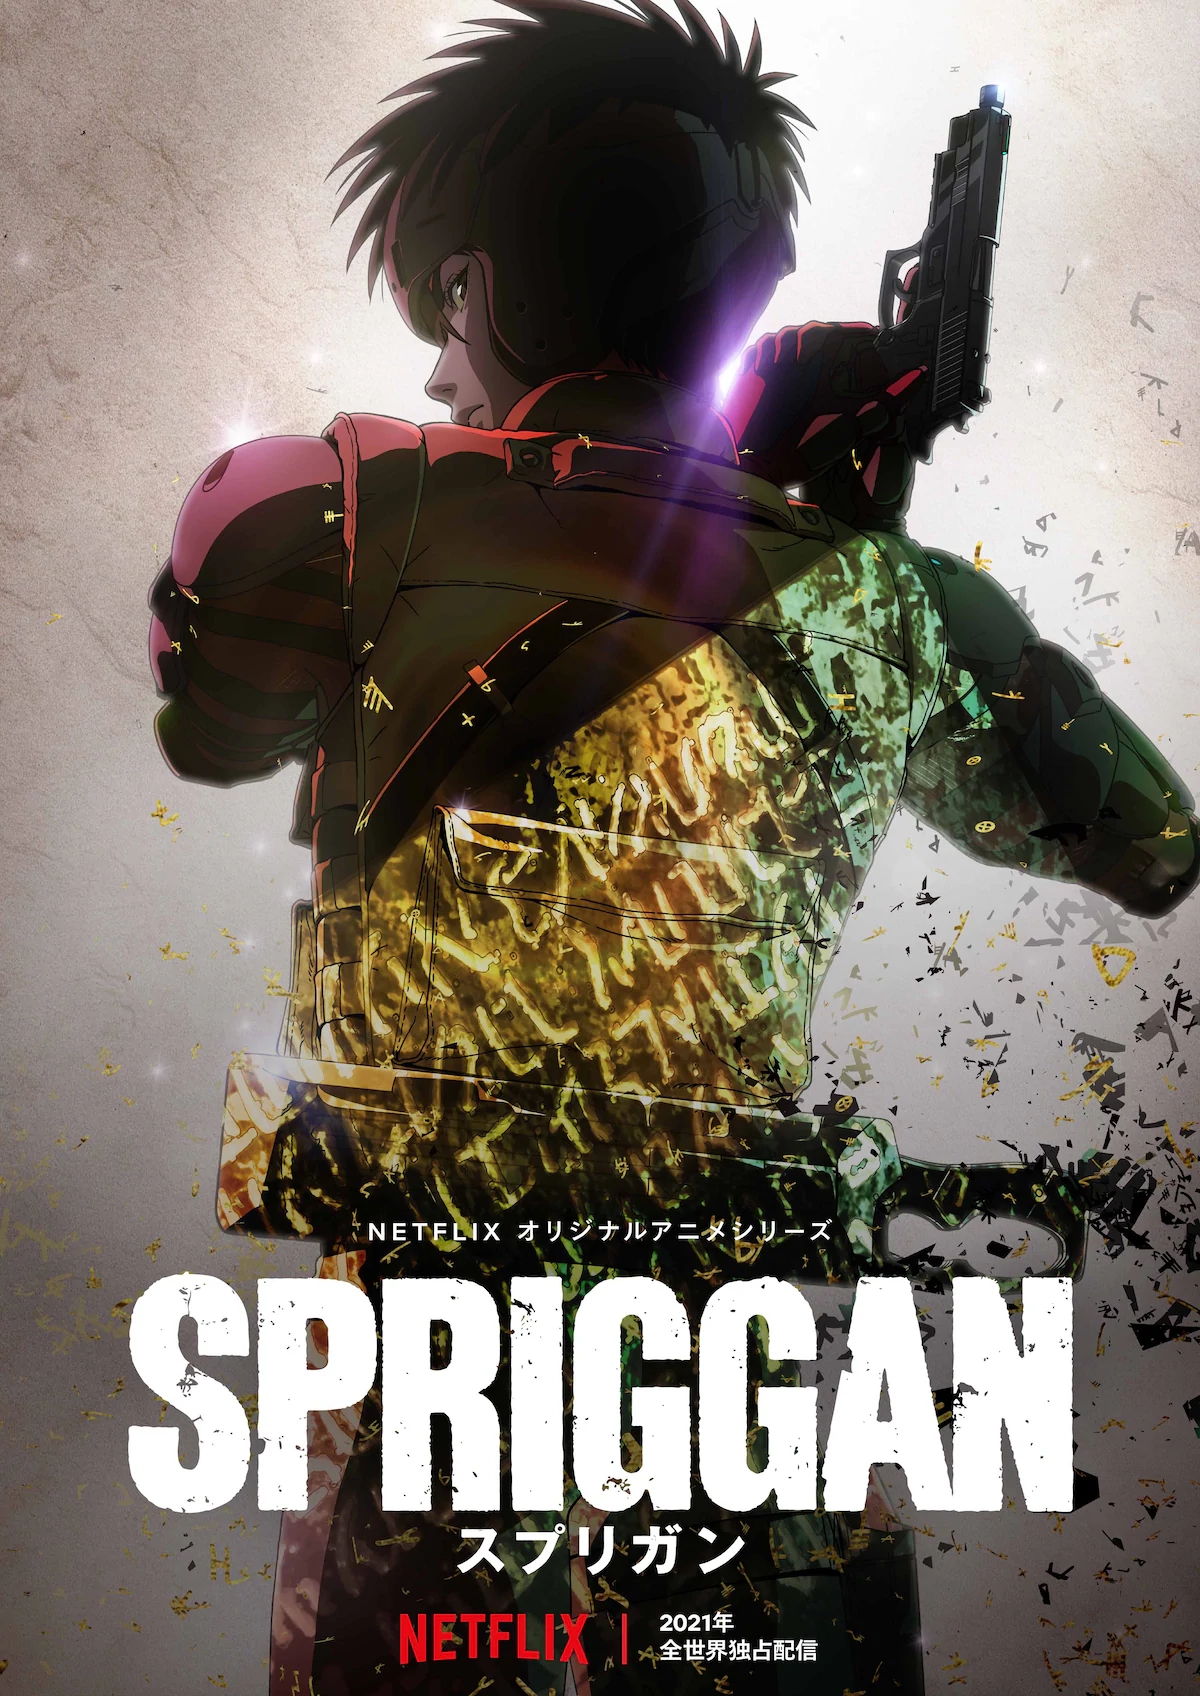 El anime Spriggan revela una imagen promocional | AnimeCL